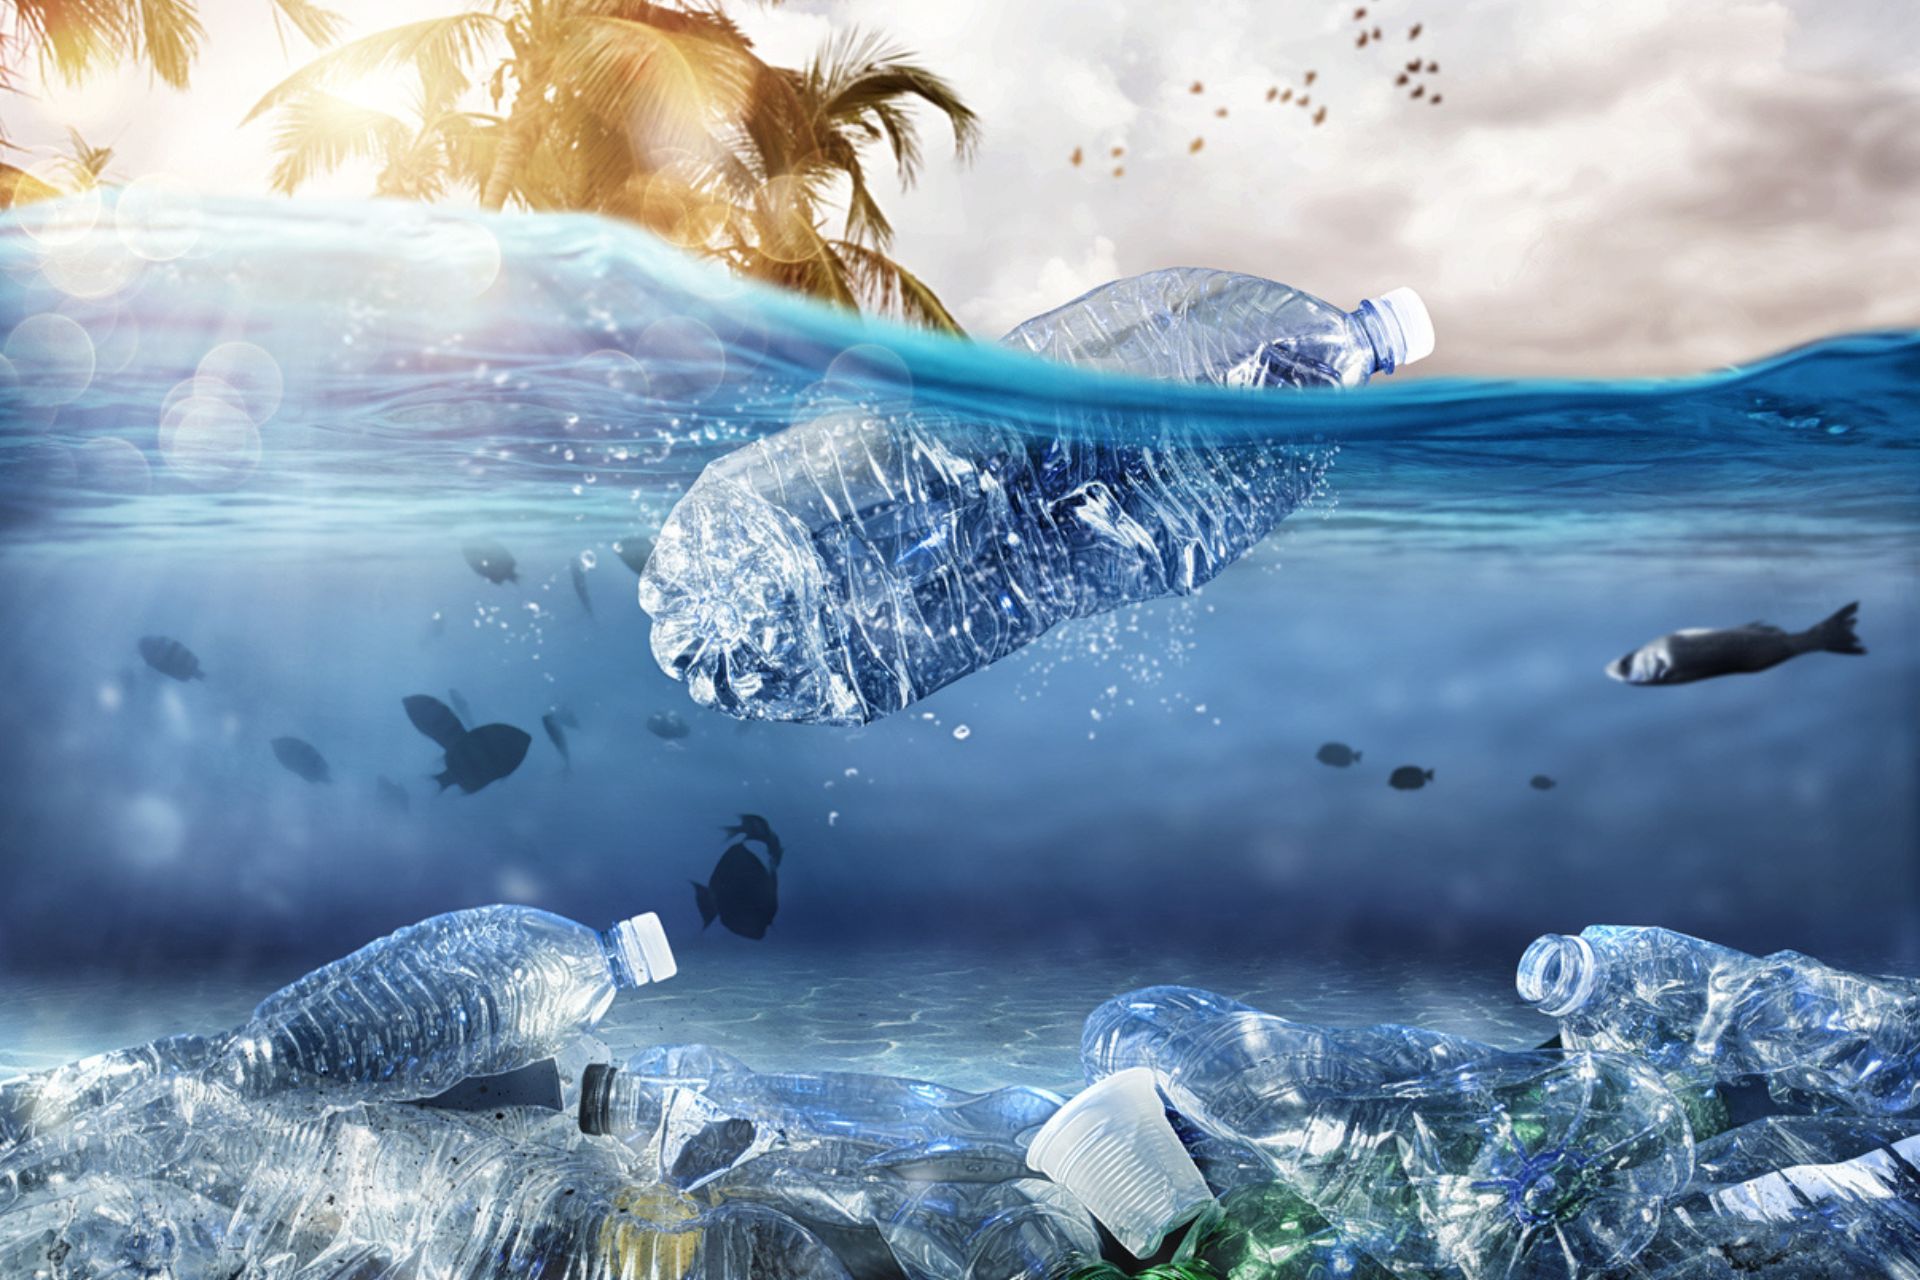 Plástico: Plástico acumulado no fundo do mar